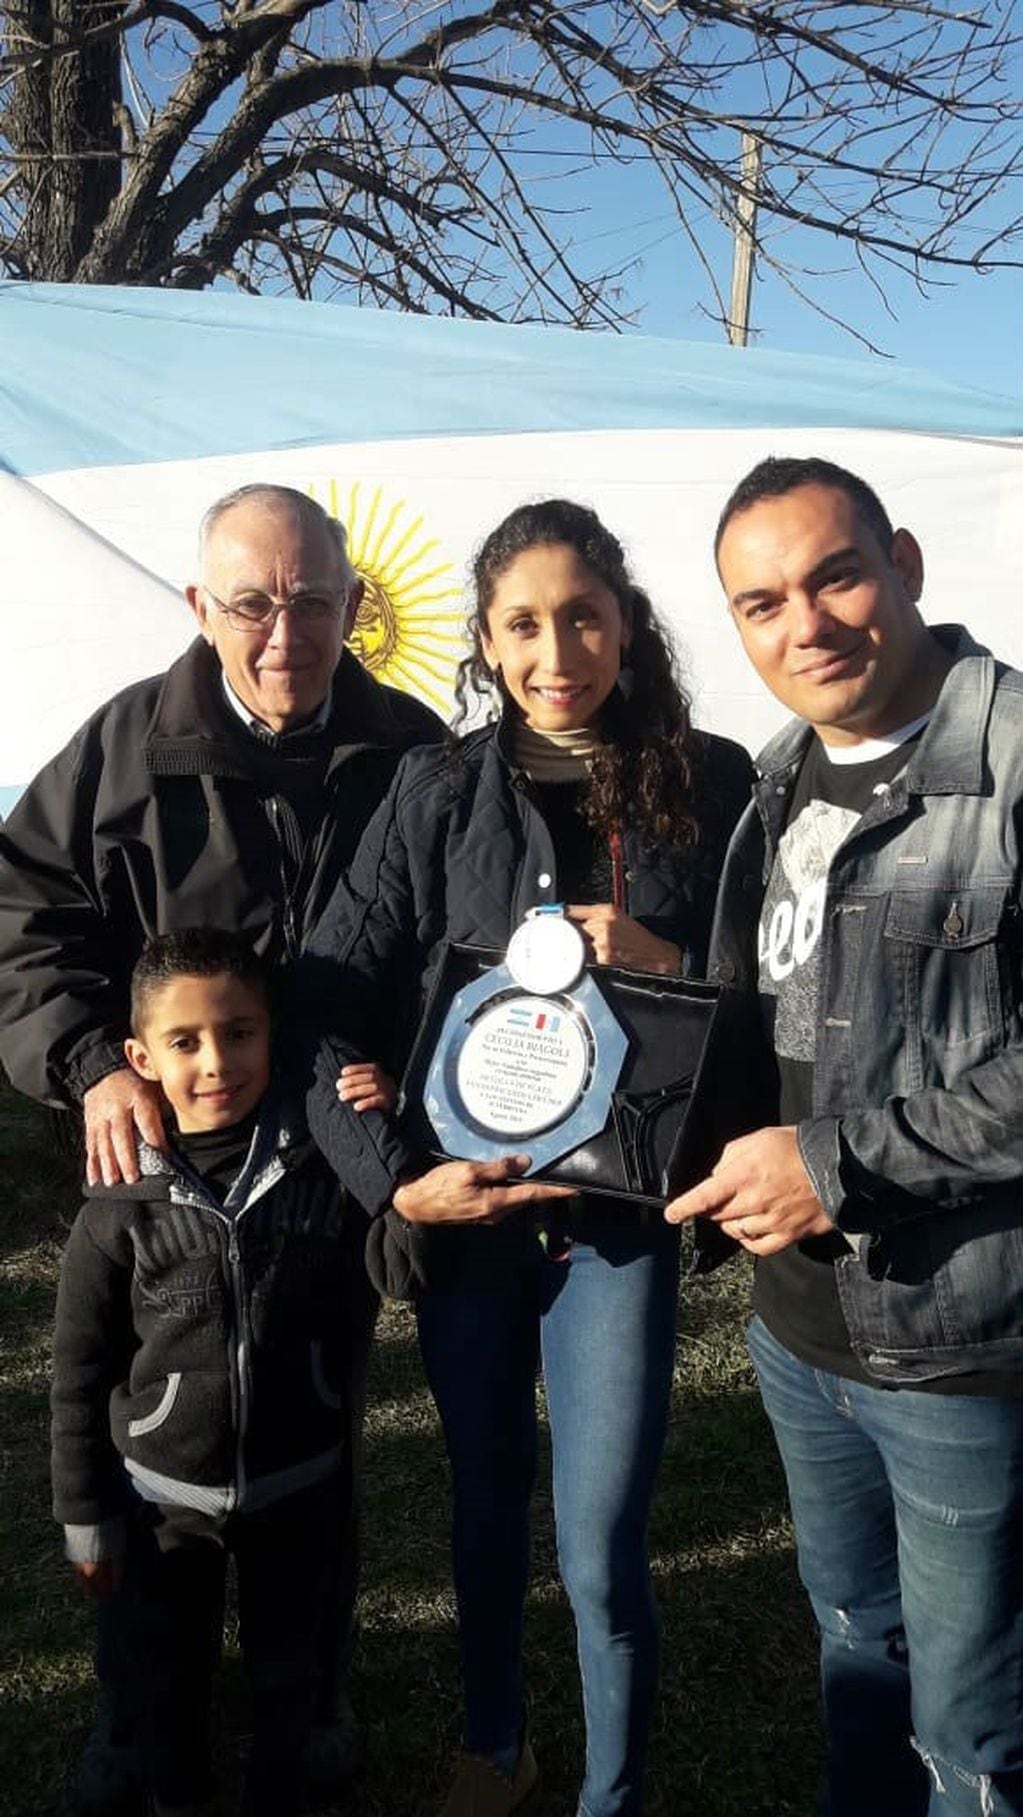 Los vecinos de barrio Ferreyra sorprendieron a Cecilia Biagioli y le hicieron un reconocimiento por la medalla obtenida en Lima 2019.